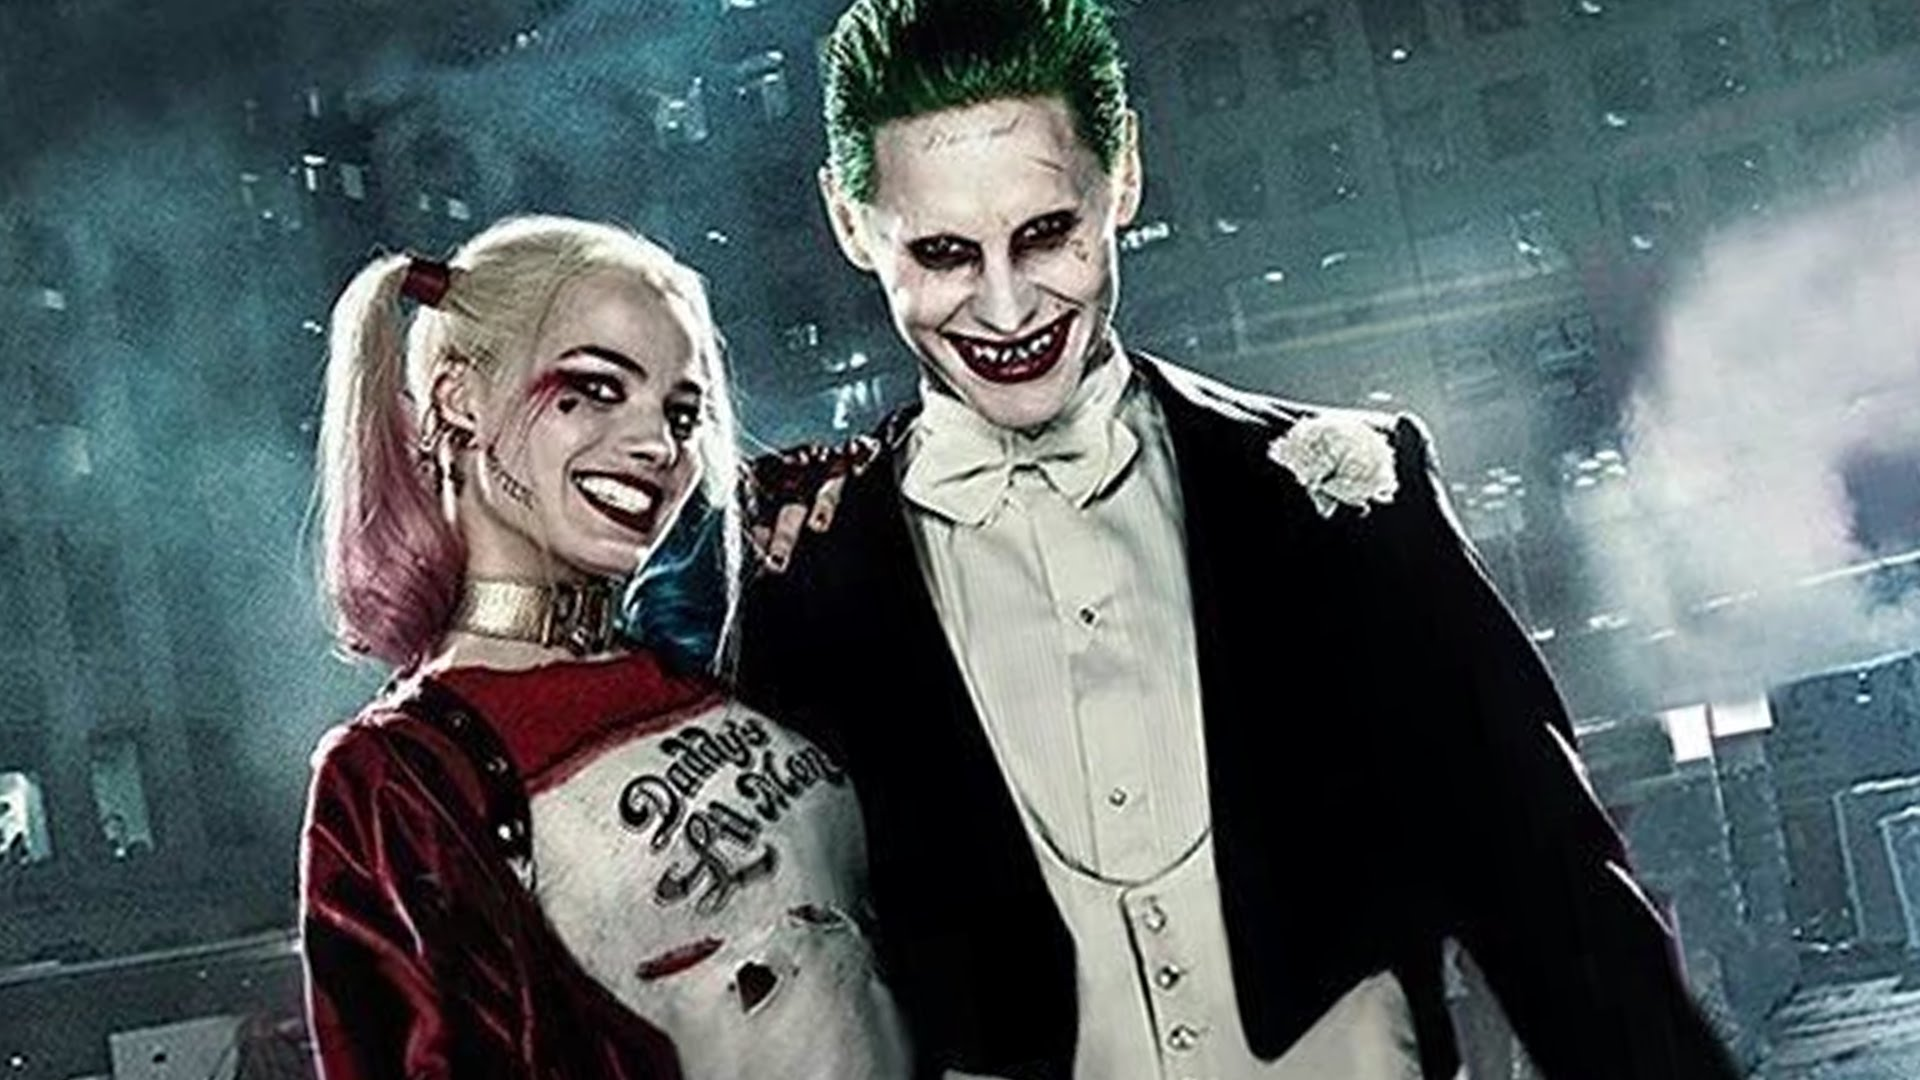 Joker Harley Quinn Wallpaper - Joker And Harley Quinn Suicide Squad Wallpaper Hd , HD Wallpaper & Backgrounds